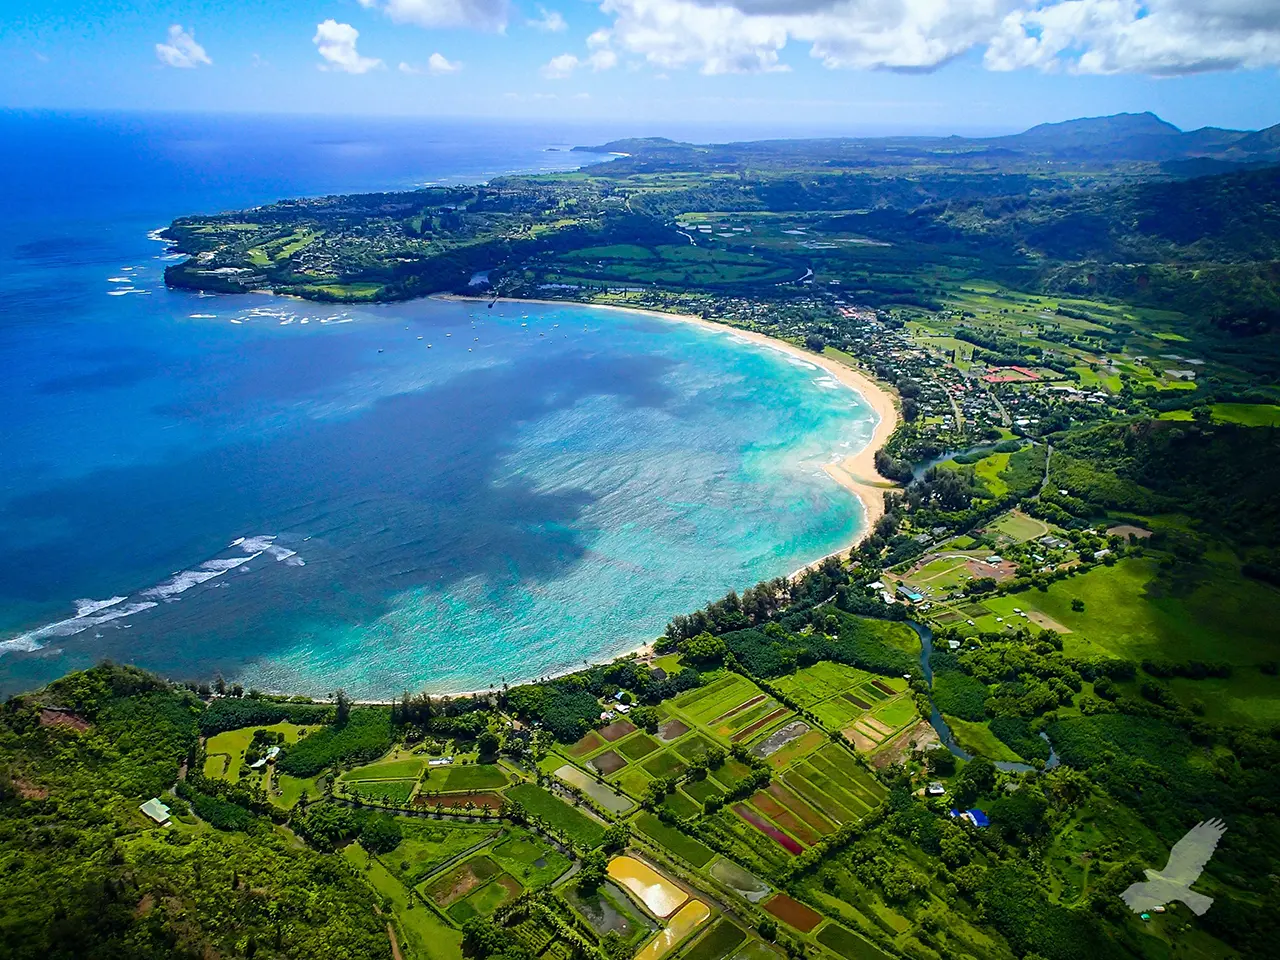 “Hiện tượng Hawaii” và lý do giới siêu giàu “chuộng” biệt thự đảo